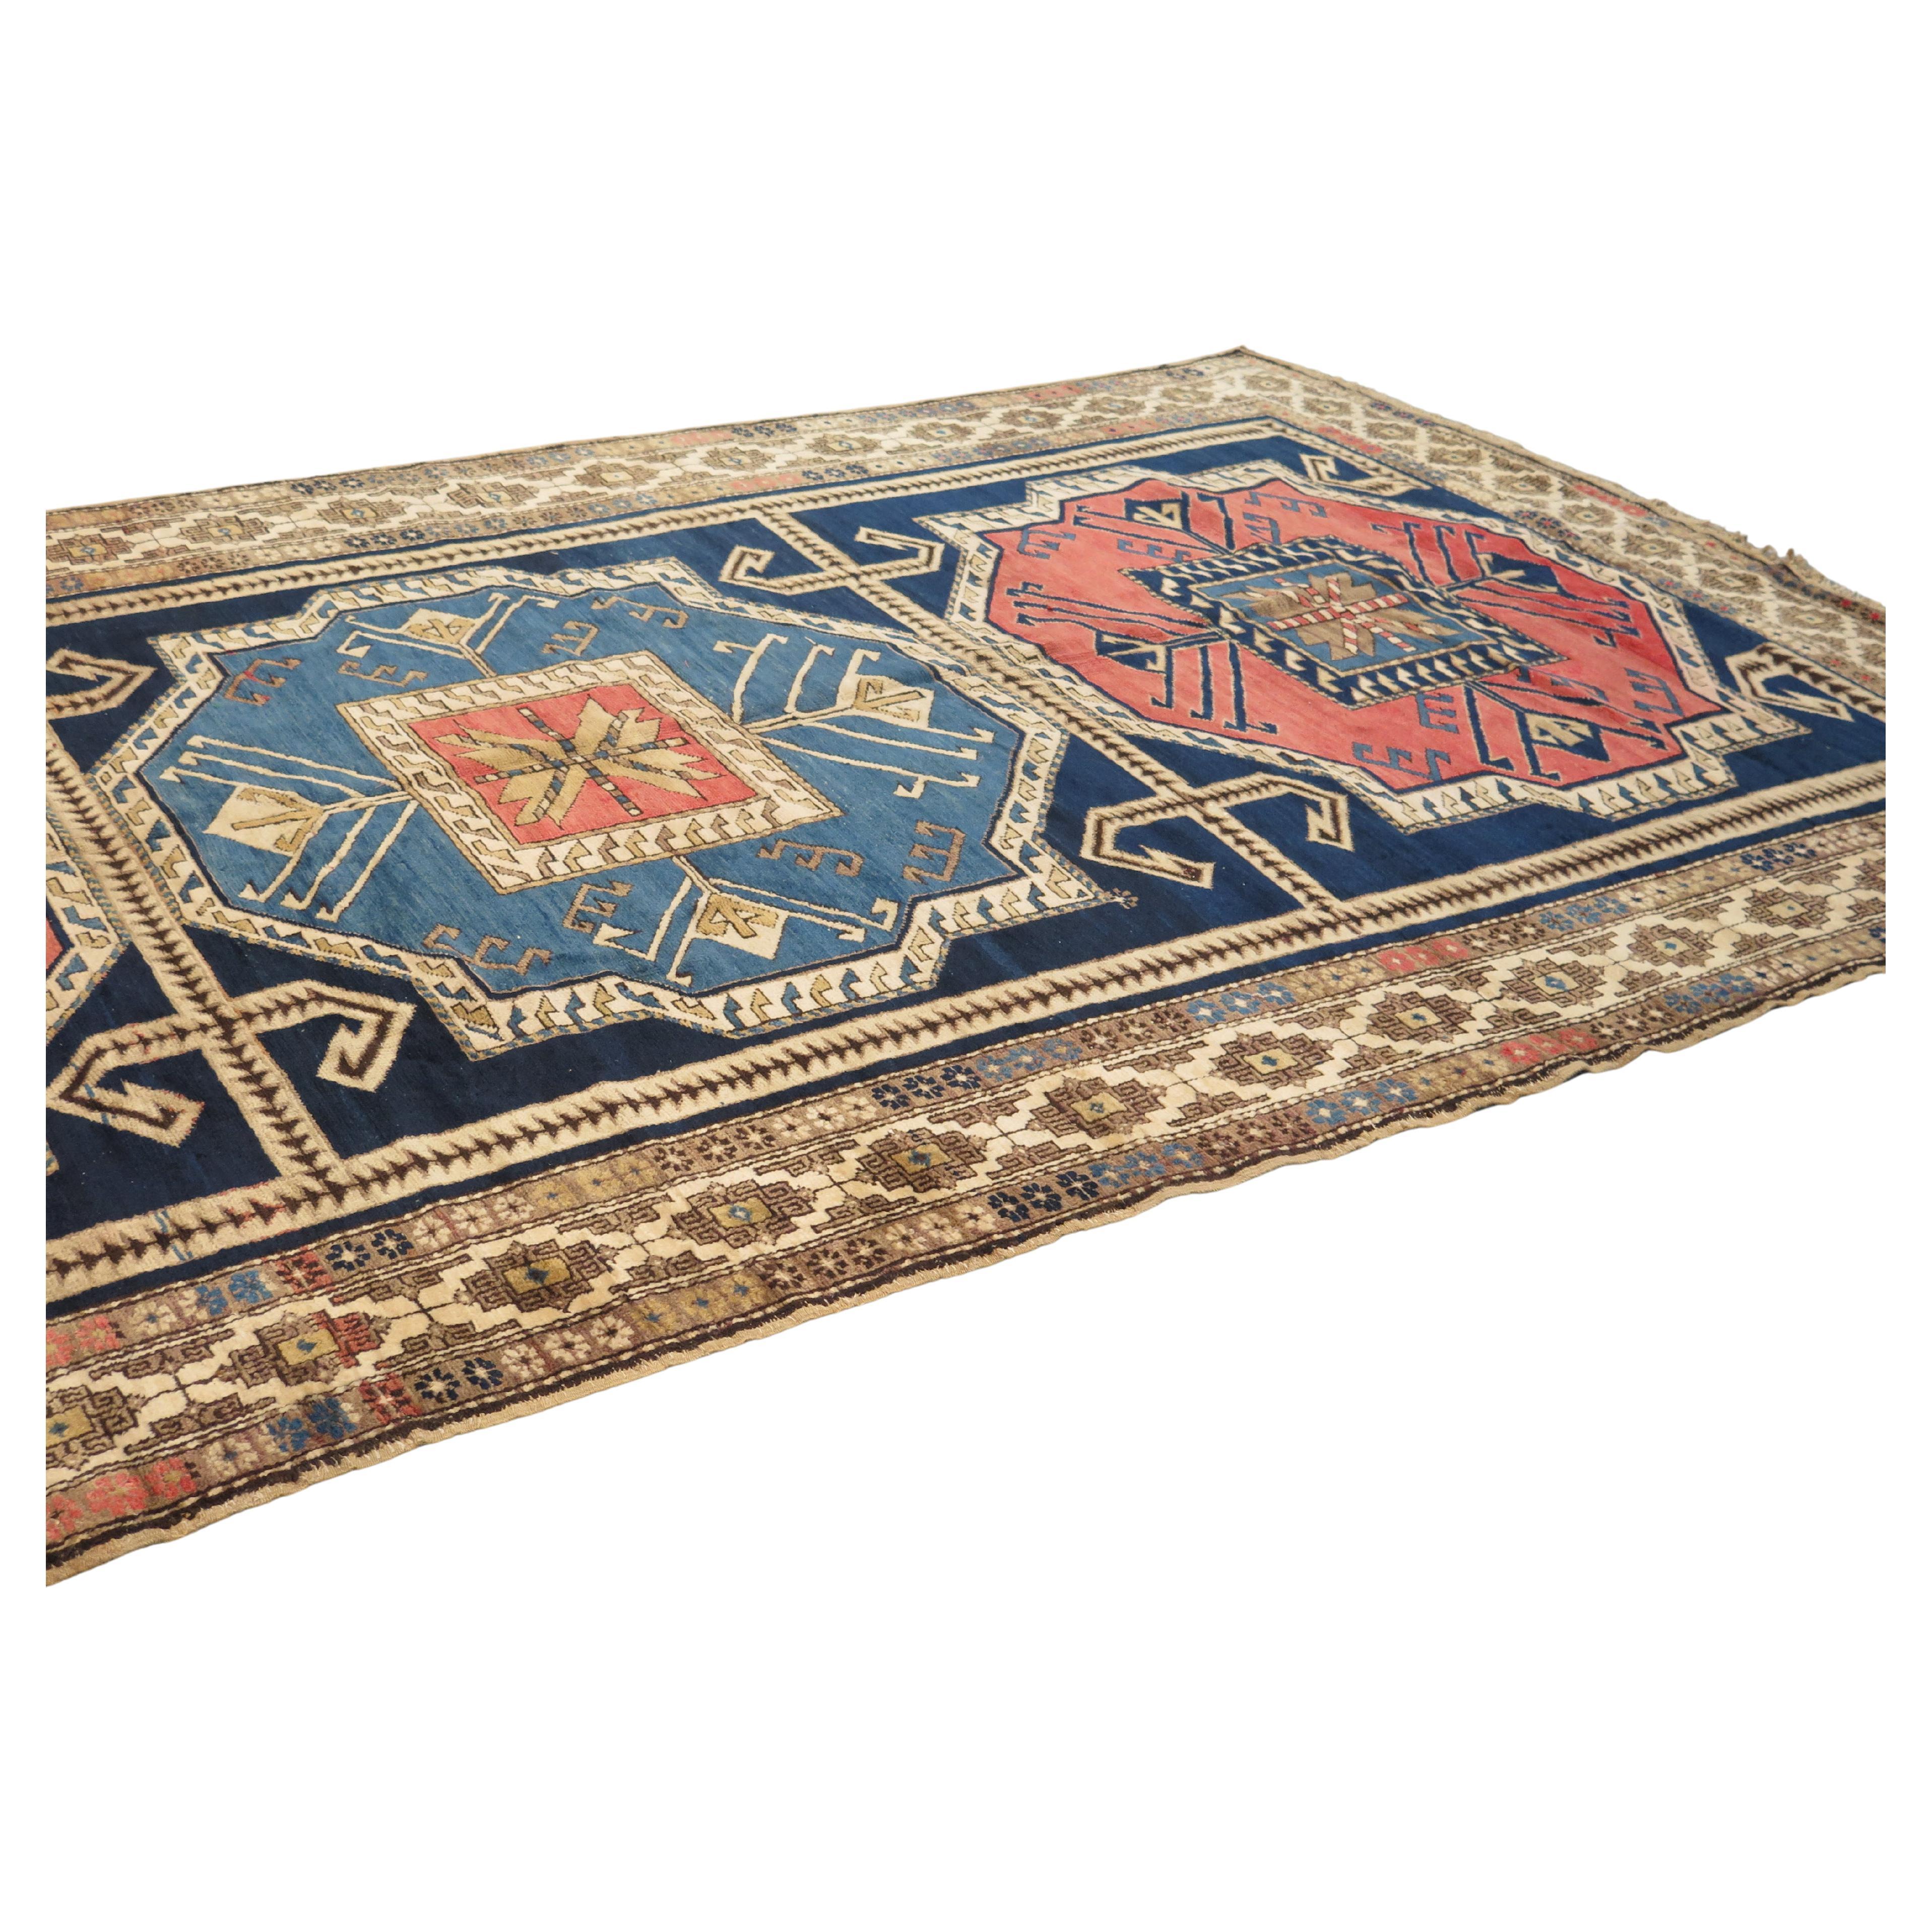 Antique Kazak Carpet, c. 1920s